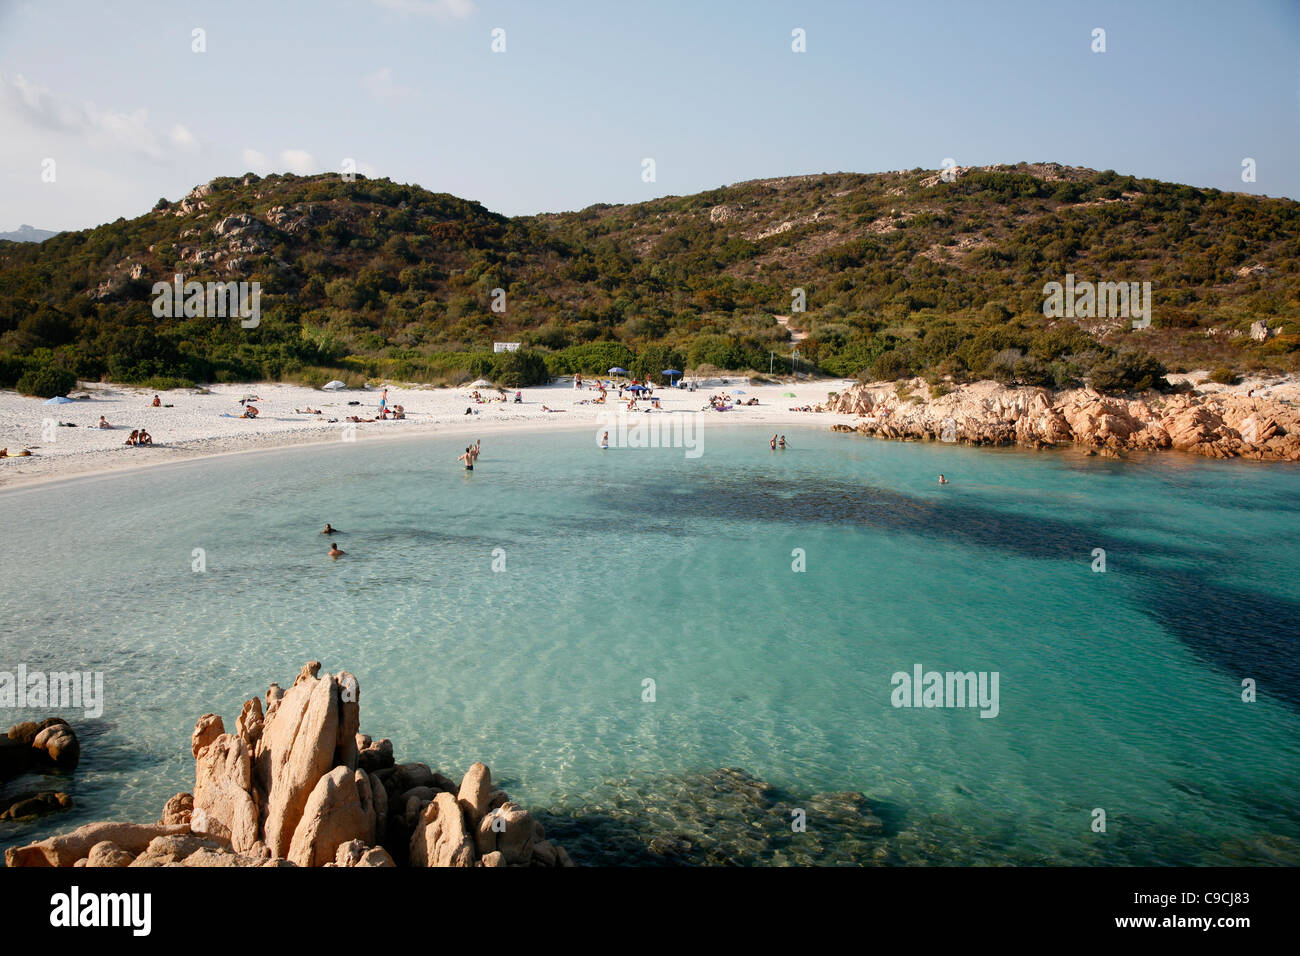 Principe beach, Costa Smeralda, Sardinia, Italy. Stock Photo